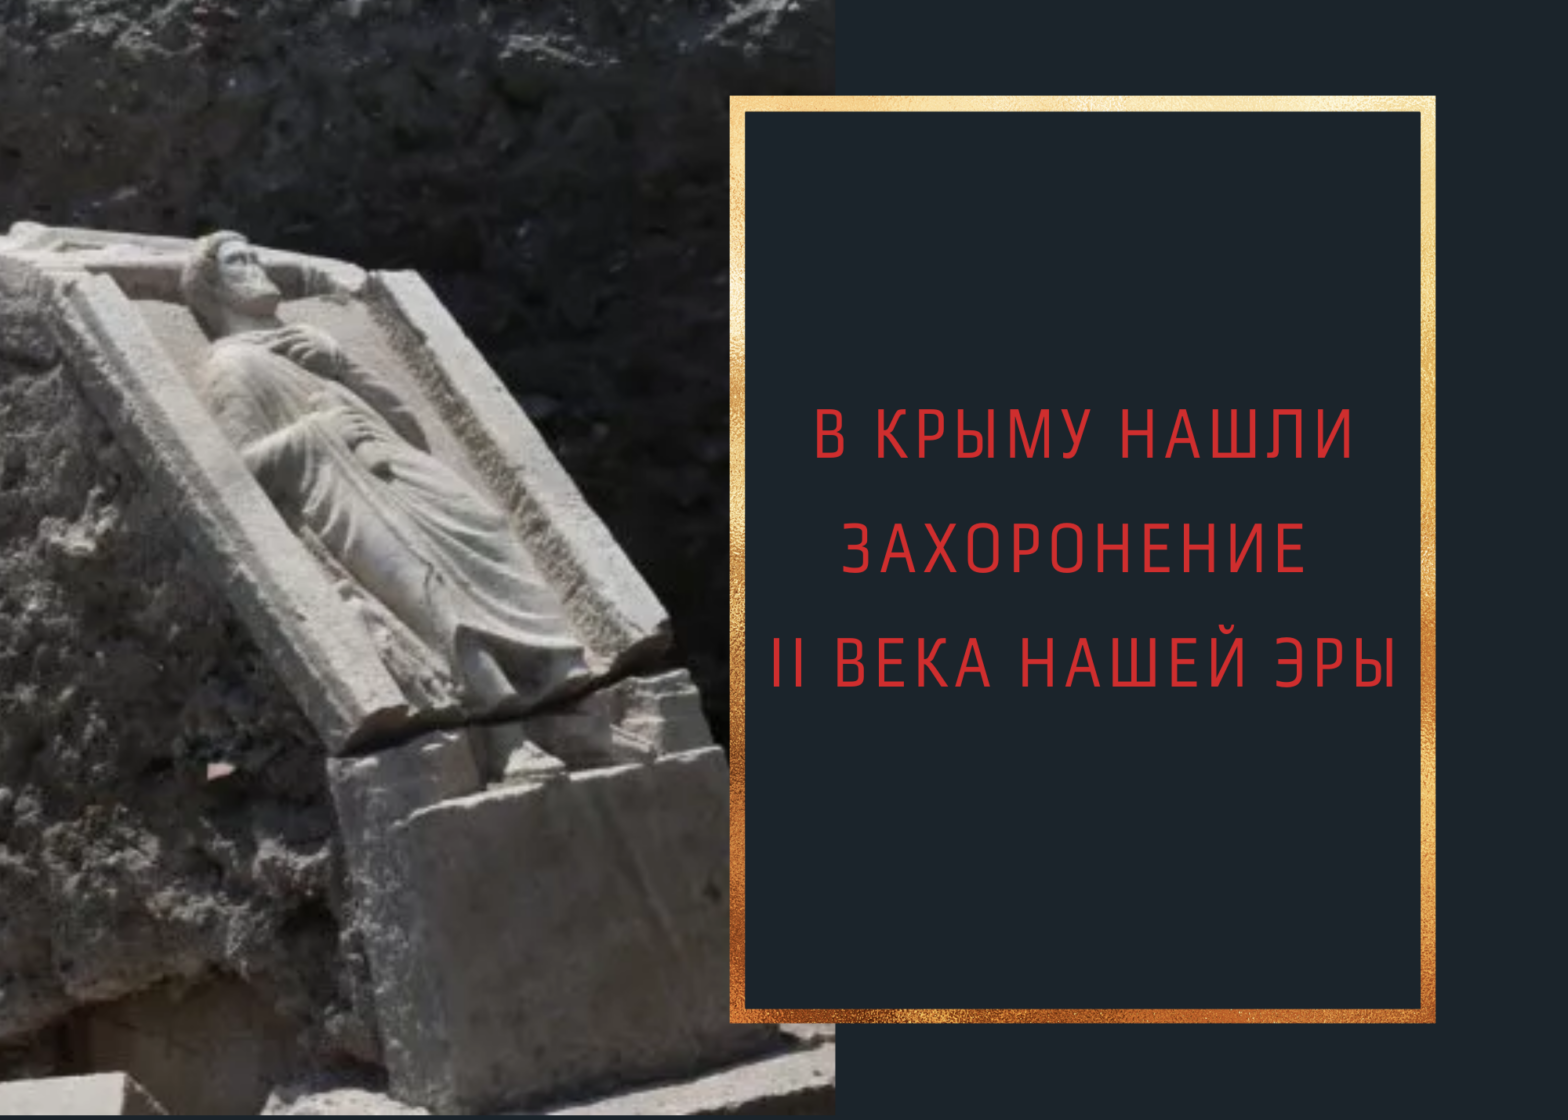 В Крыму нашли захоронение II века нашей эры